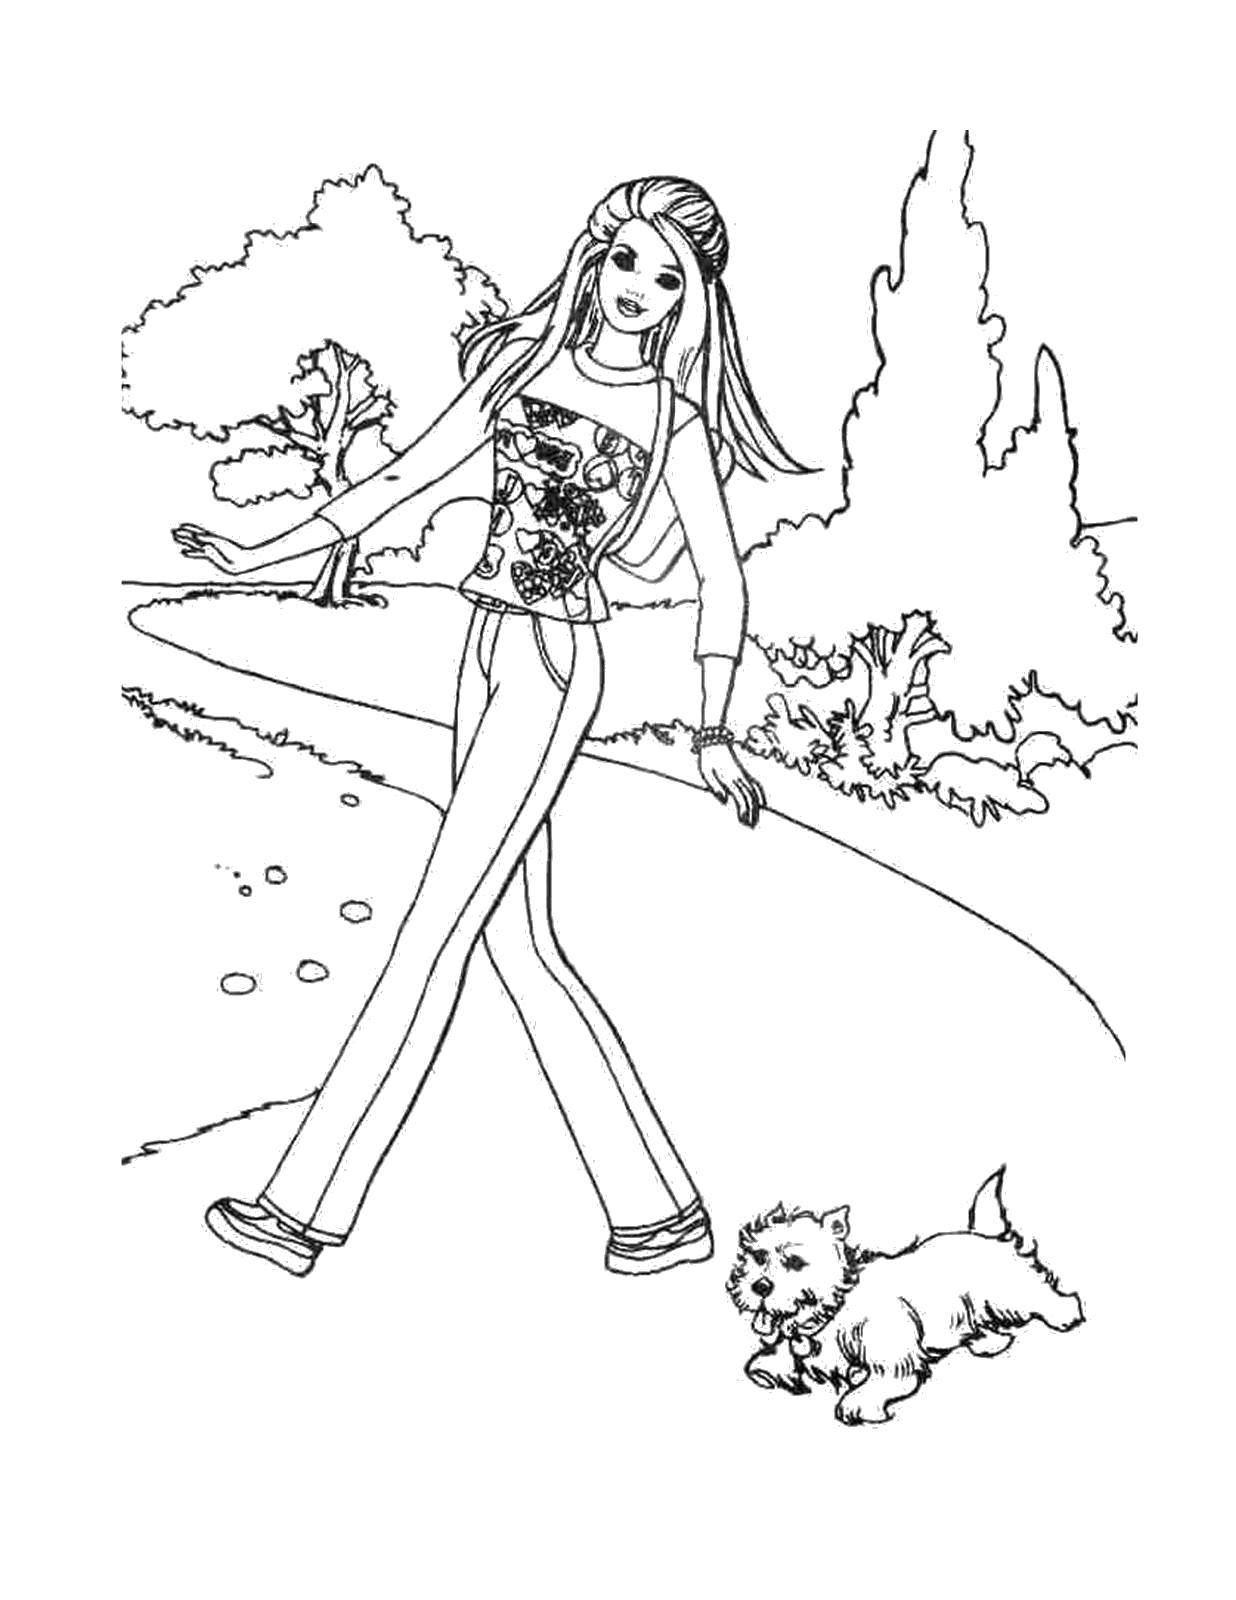 Название: Раскраска Барби на прогулке со своей собачкой. Категория: Барби. Теги: барби, девочка, кукла, собачка.